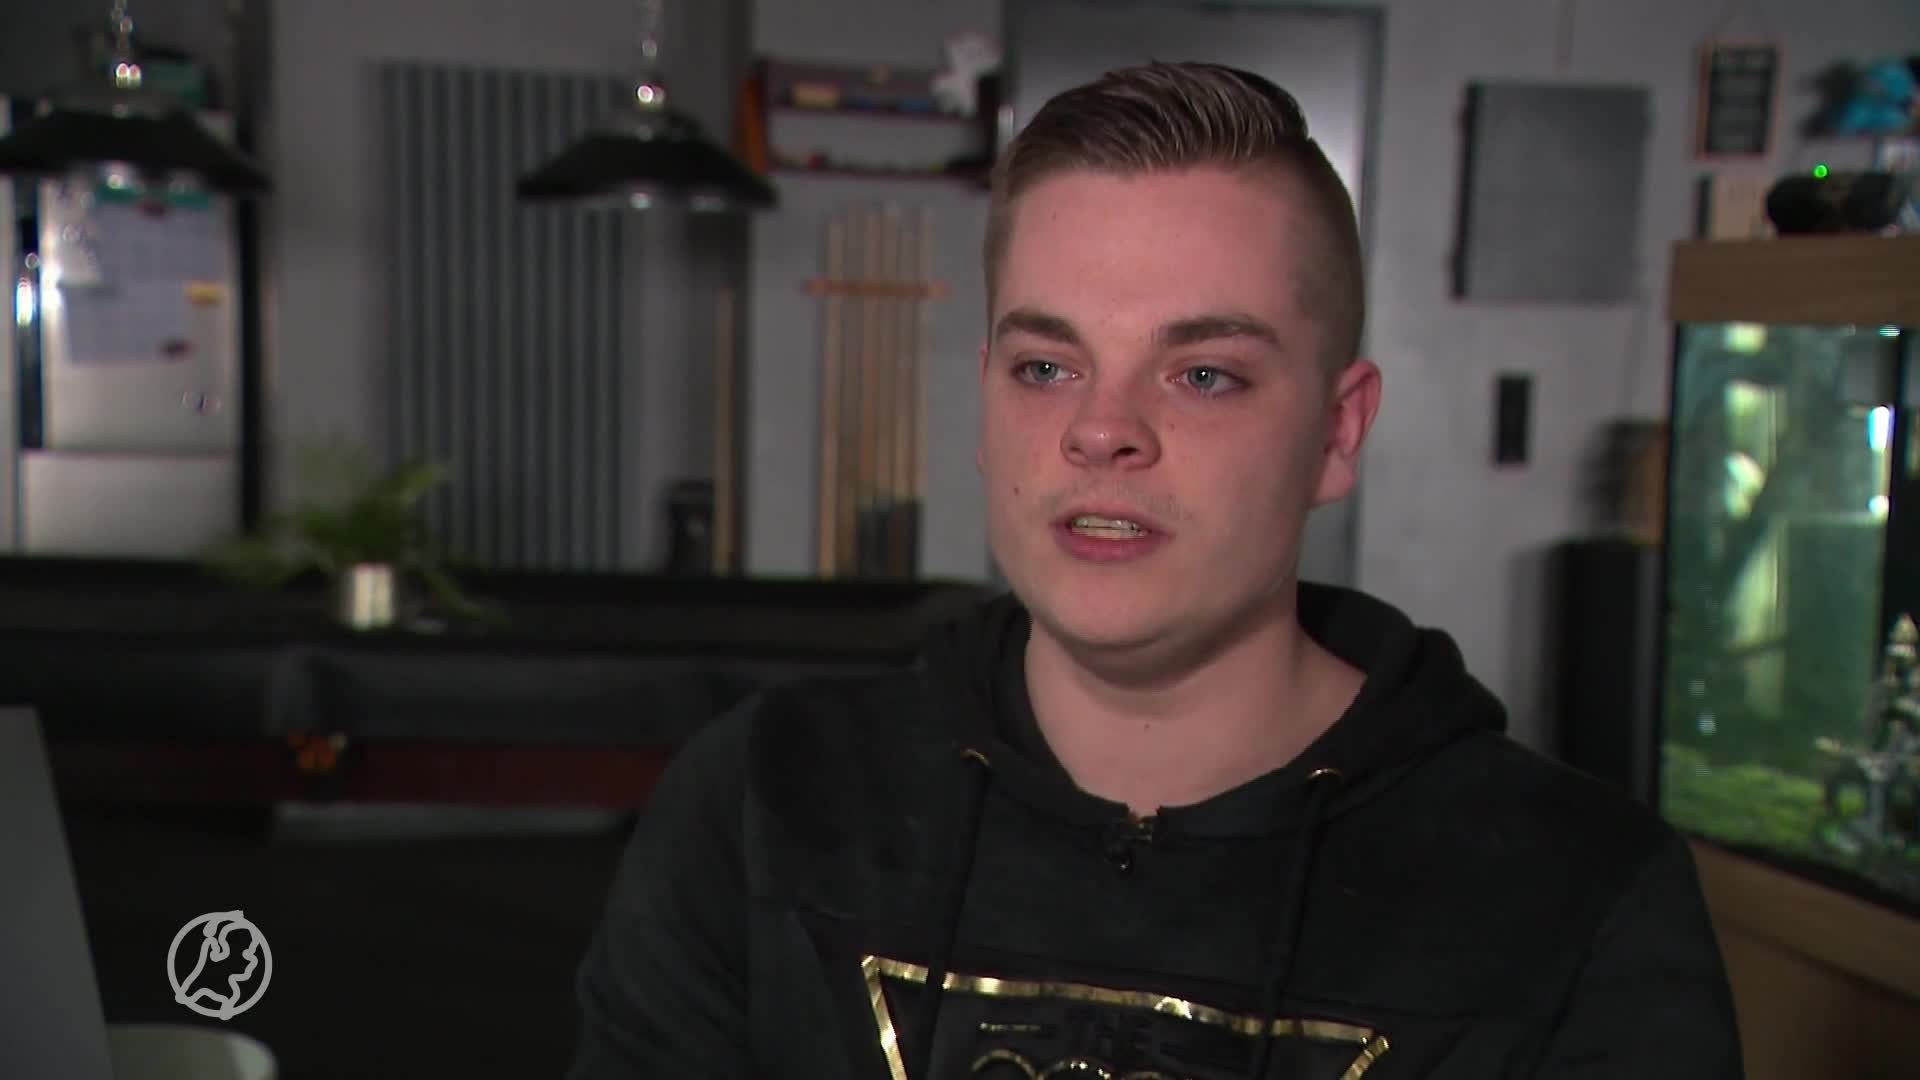 Maikel reed in auto met drugs op: 'Had echt fout kunnen gaan'